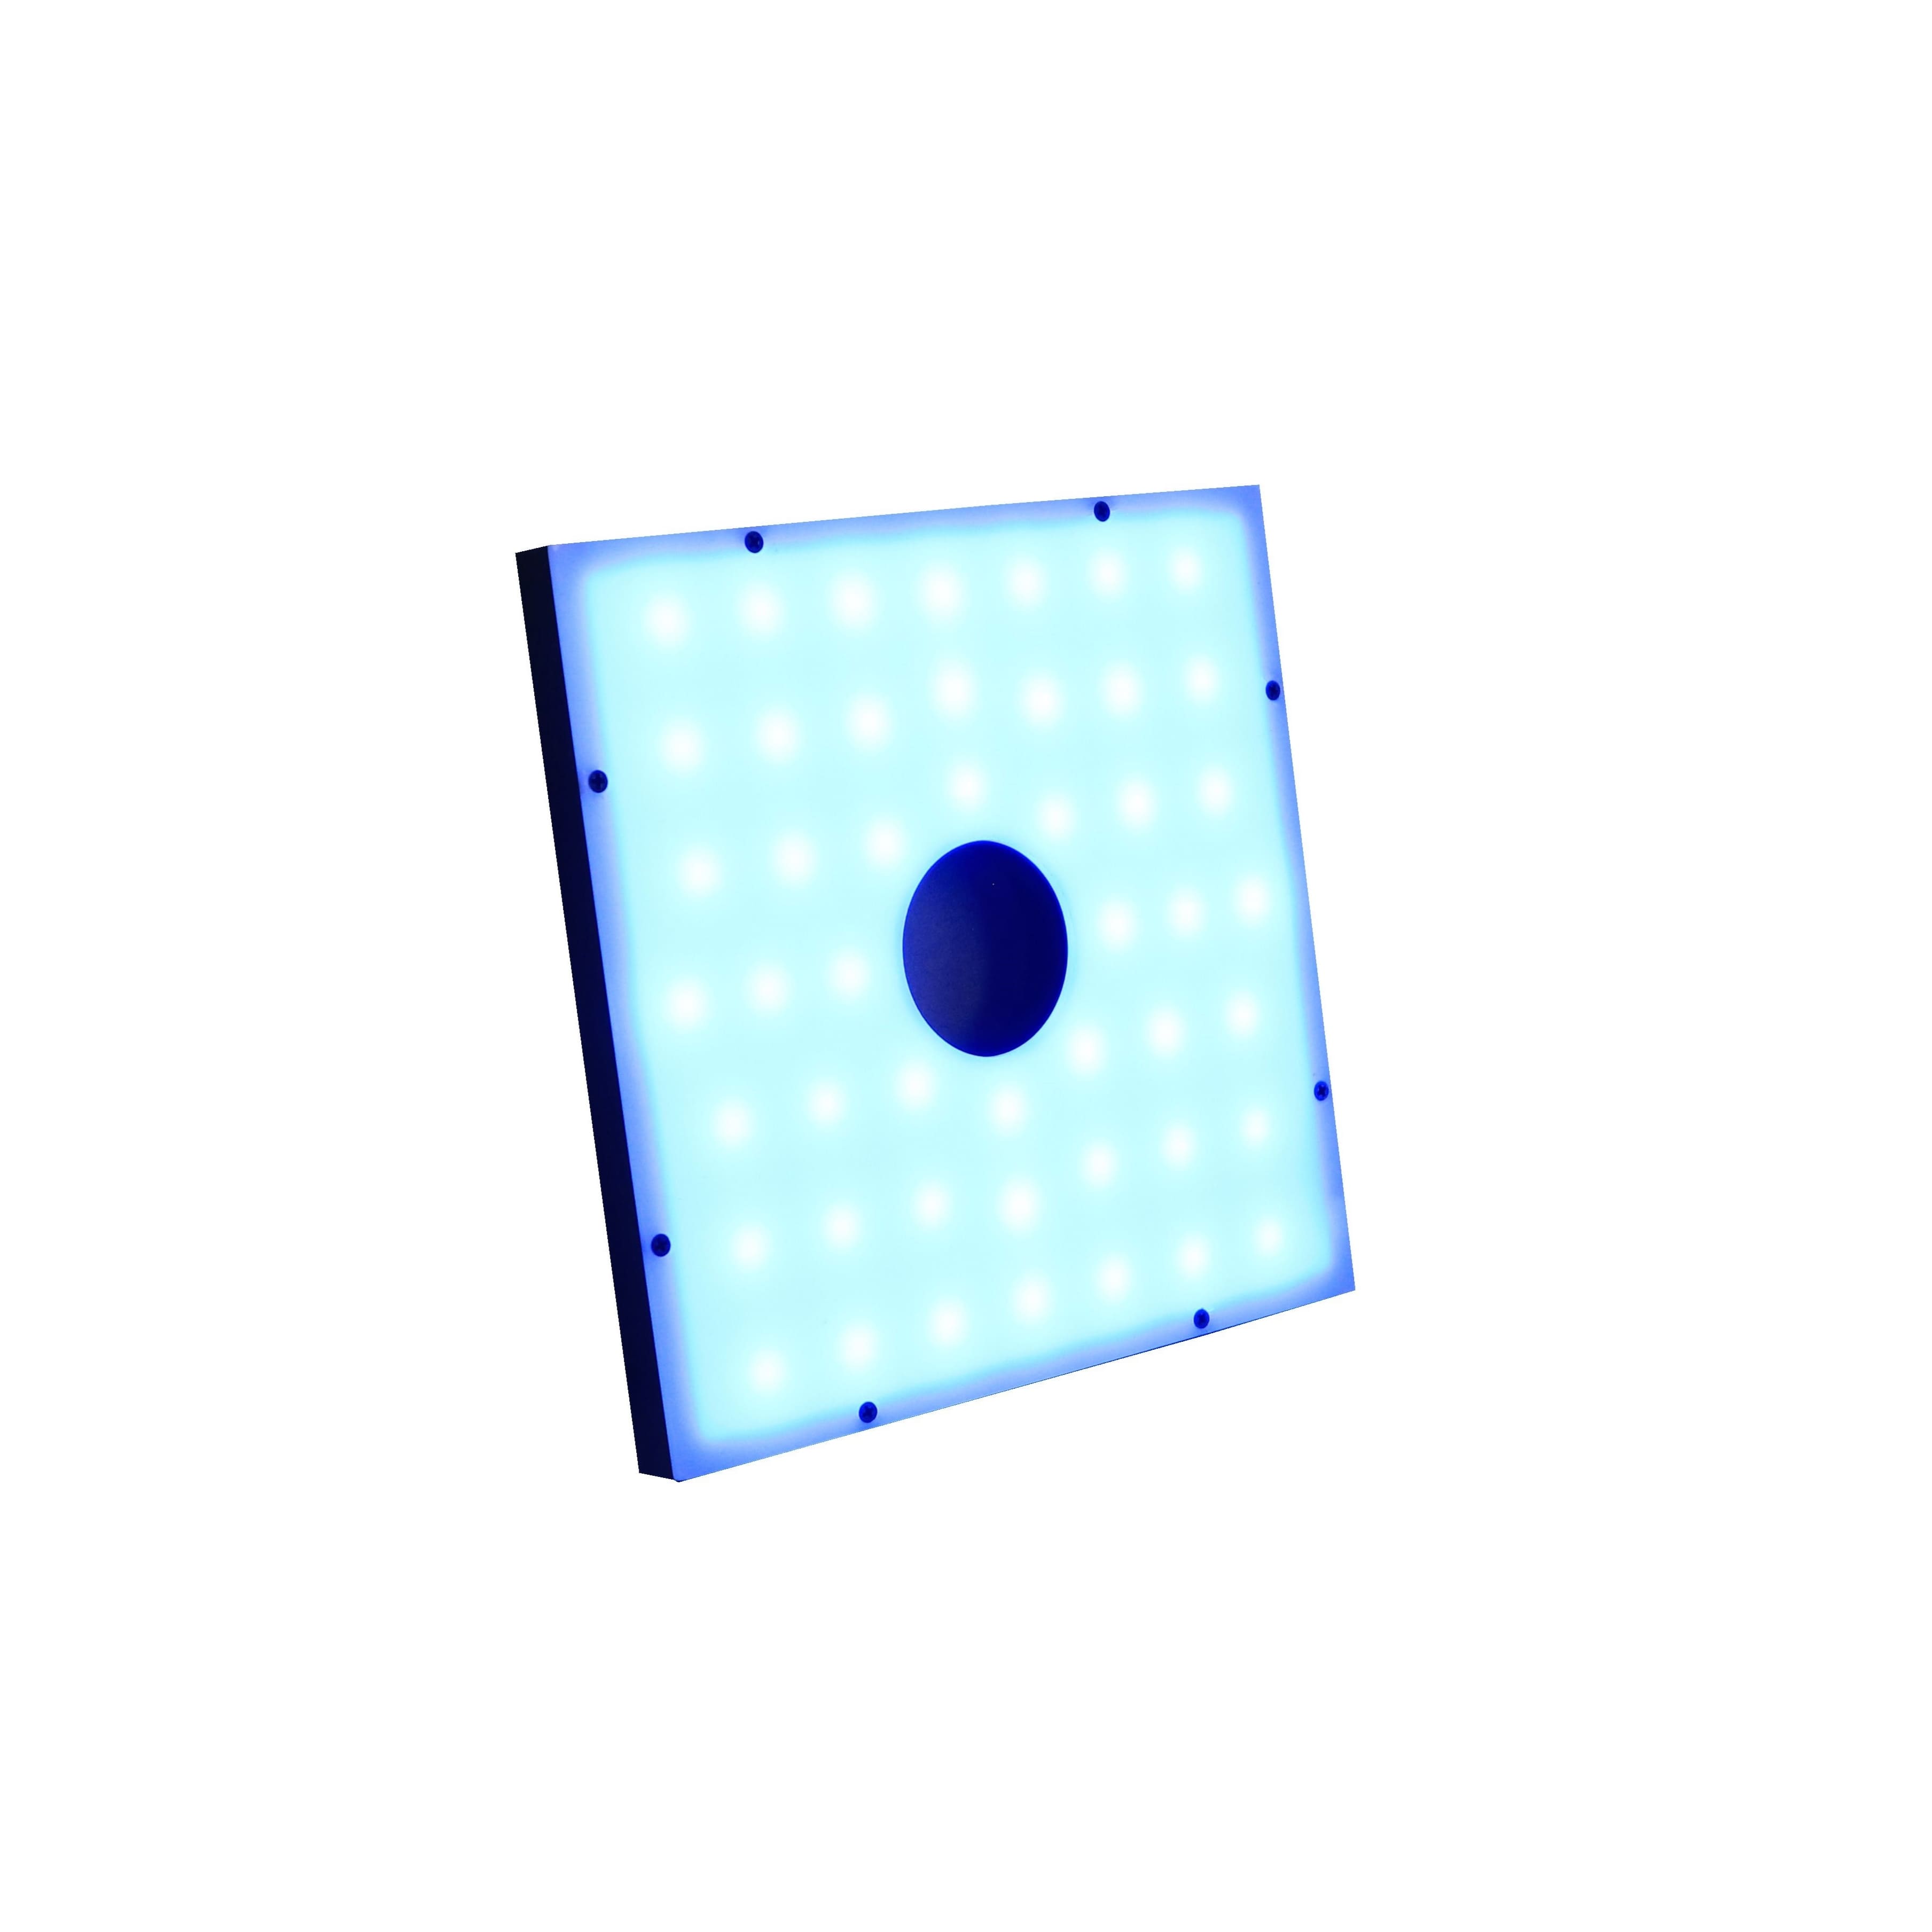 DSQ2-208/208 Diffused Square – Blue